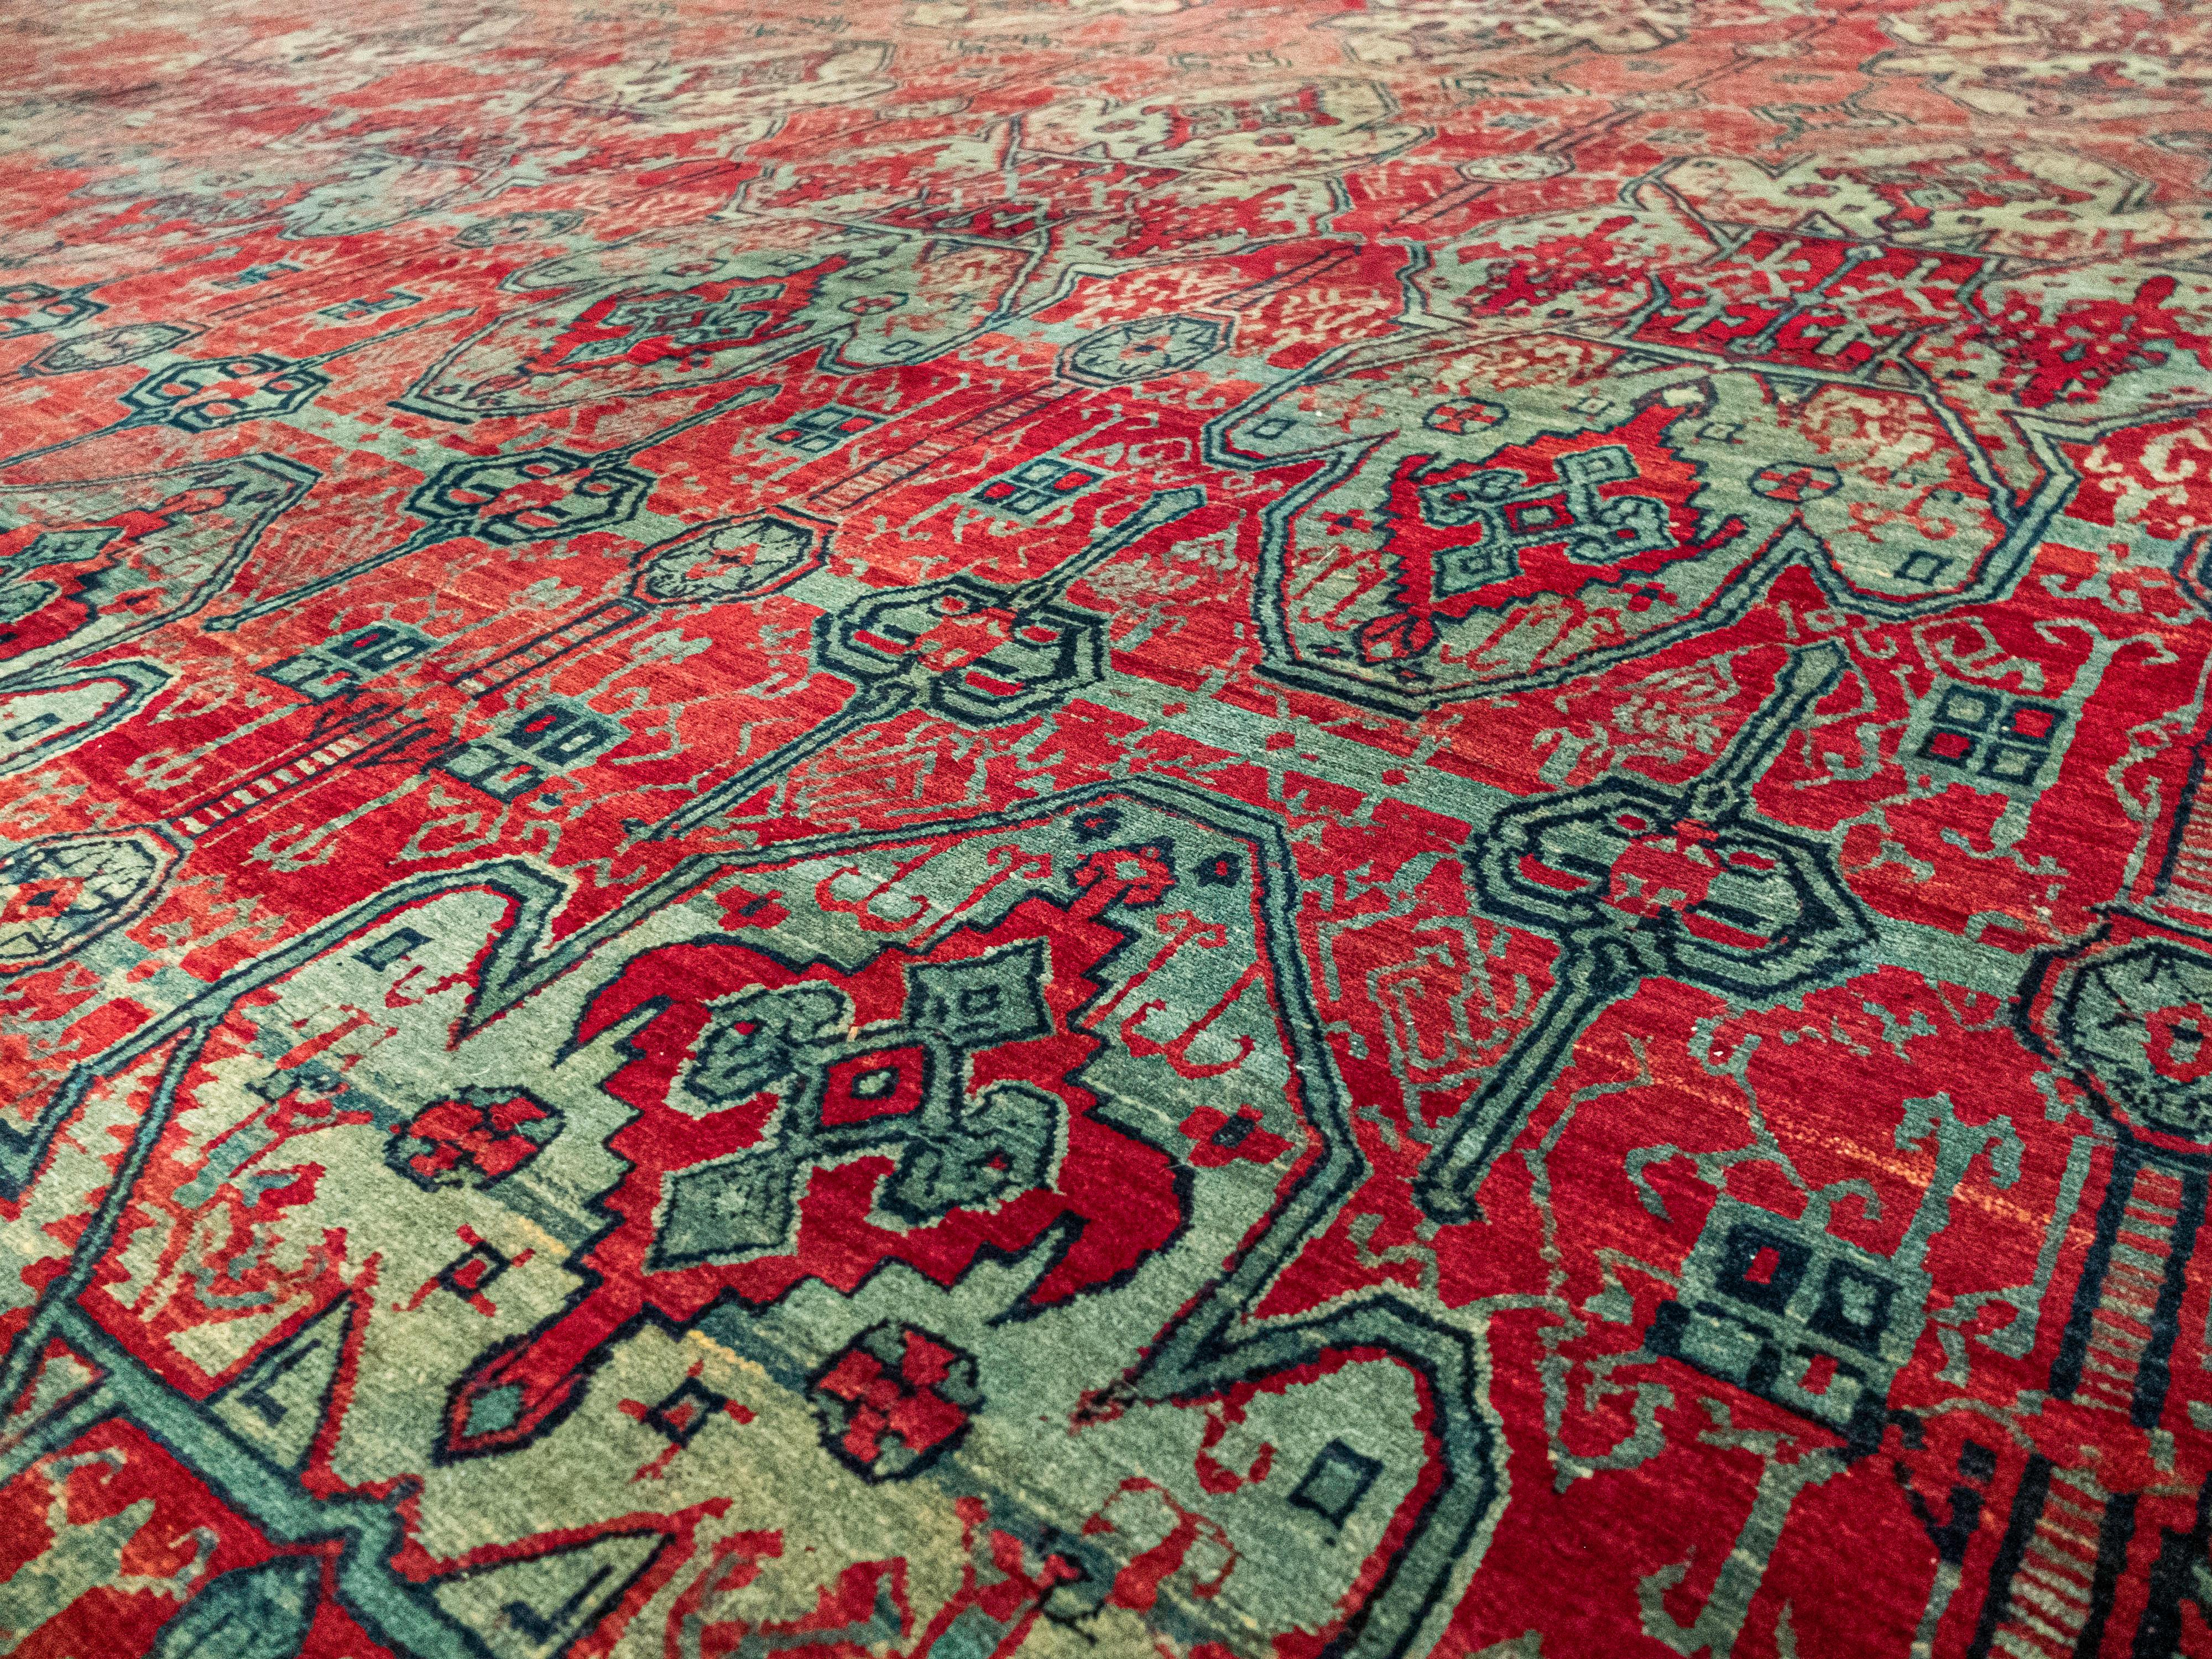 Il s'agit d'un tapis antique Khorasan au motif unique. Il présente des détails complexes dans le champ principal et utilise des rouges profonds et des bleus verdâtres clairs. Il présente ensuite une bordure légèrement contrastée à motif de vigne